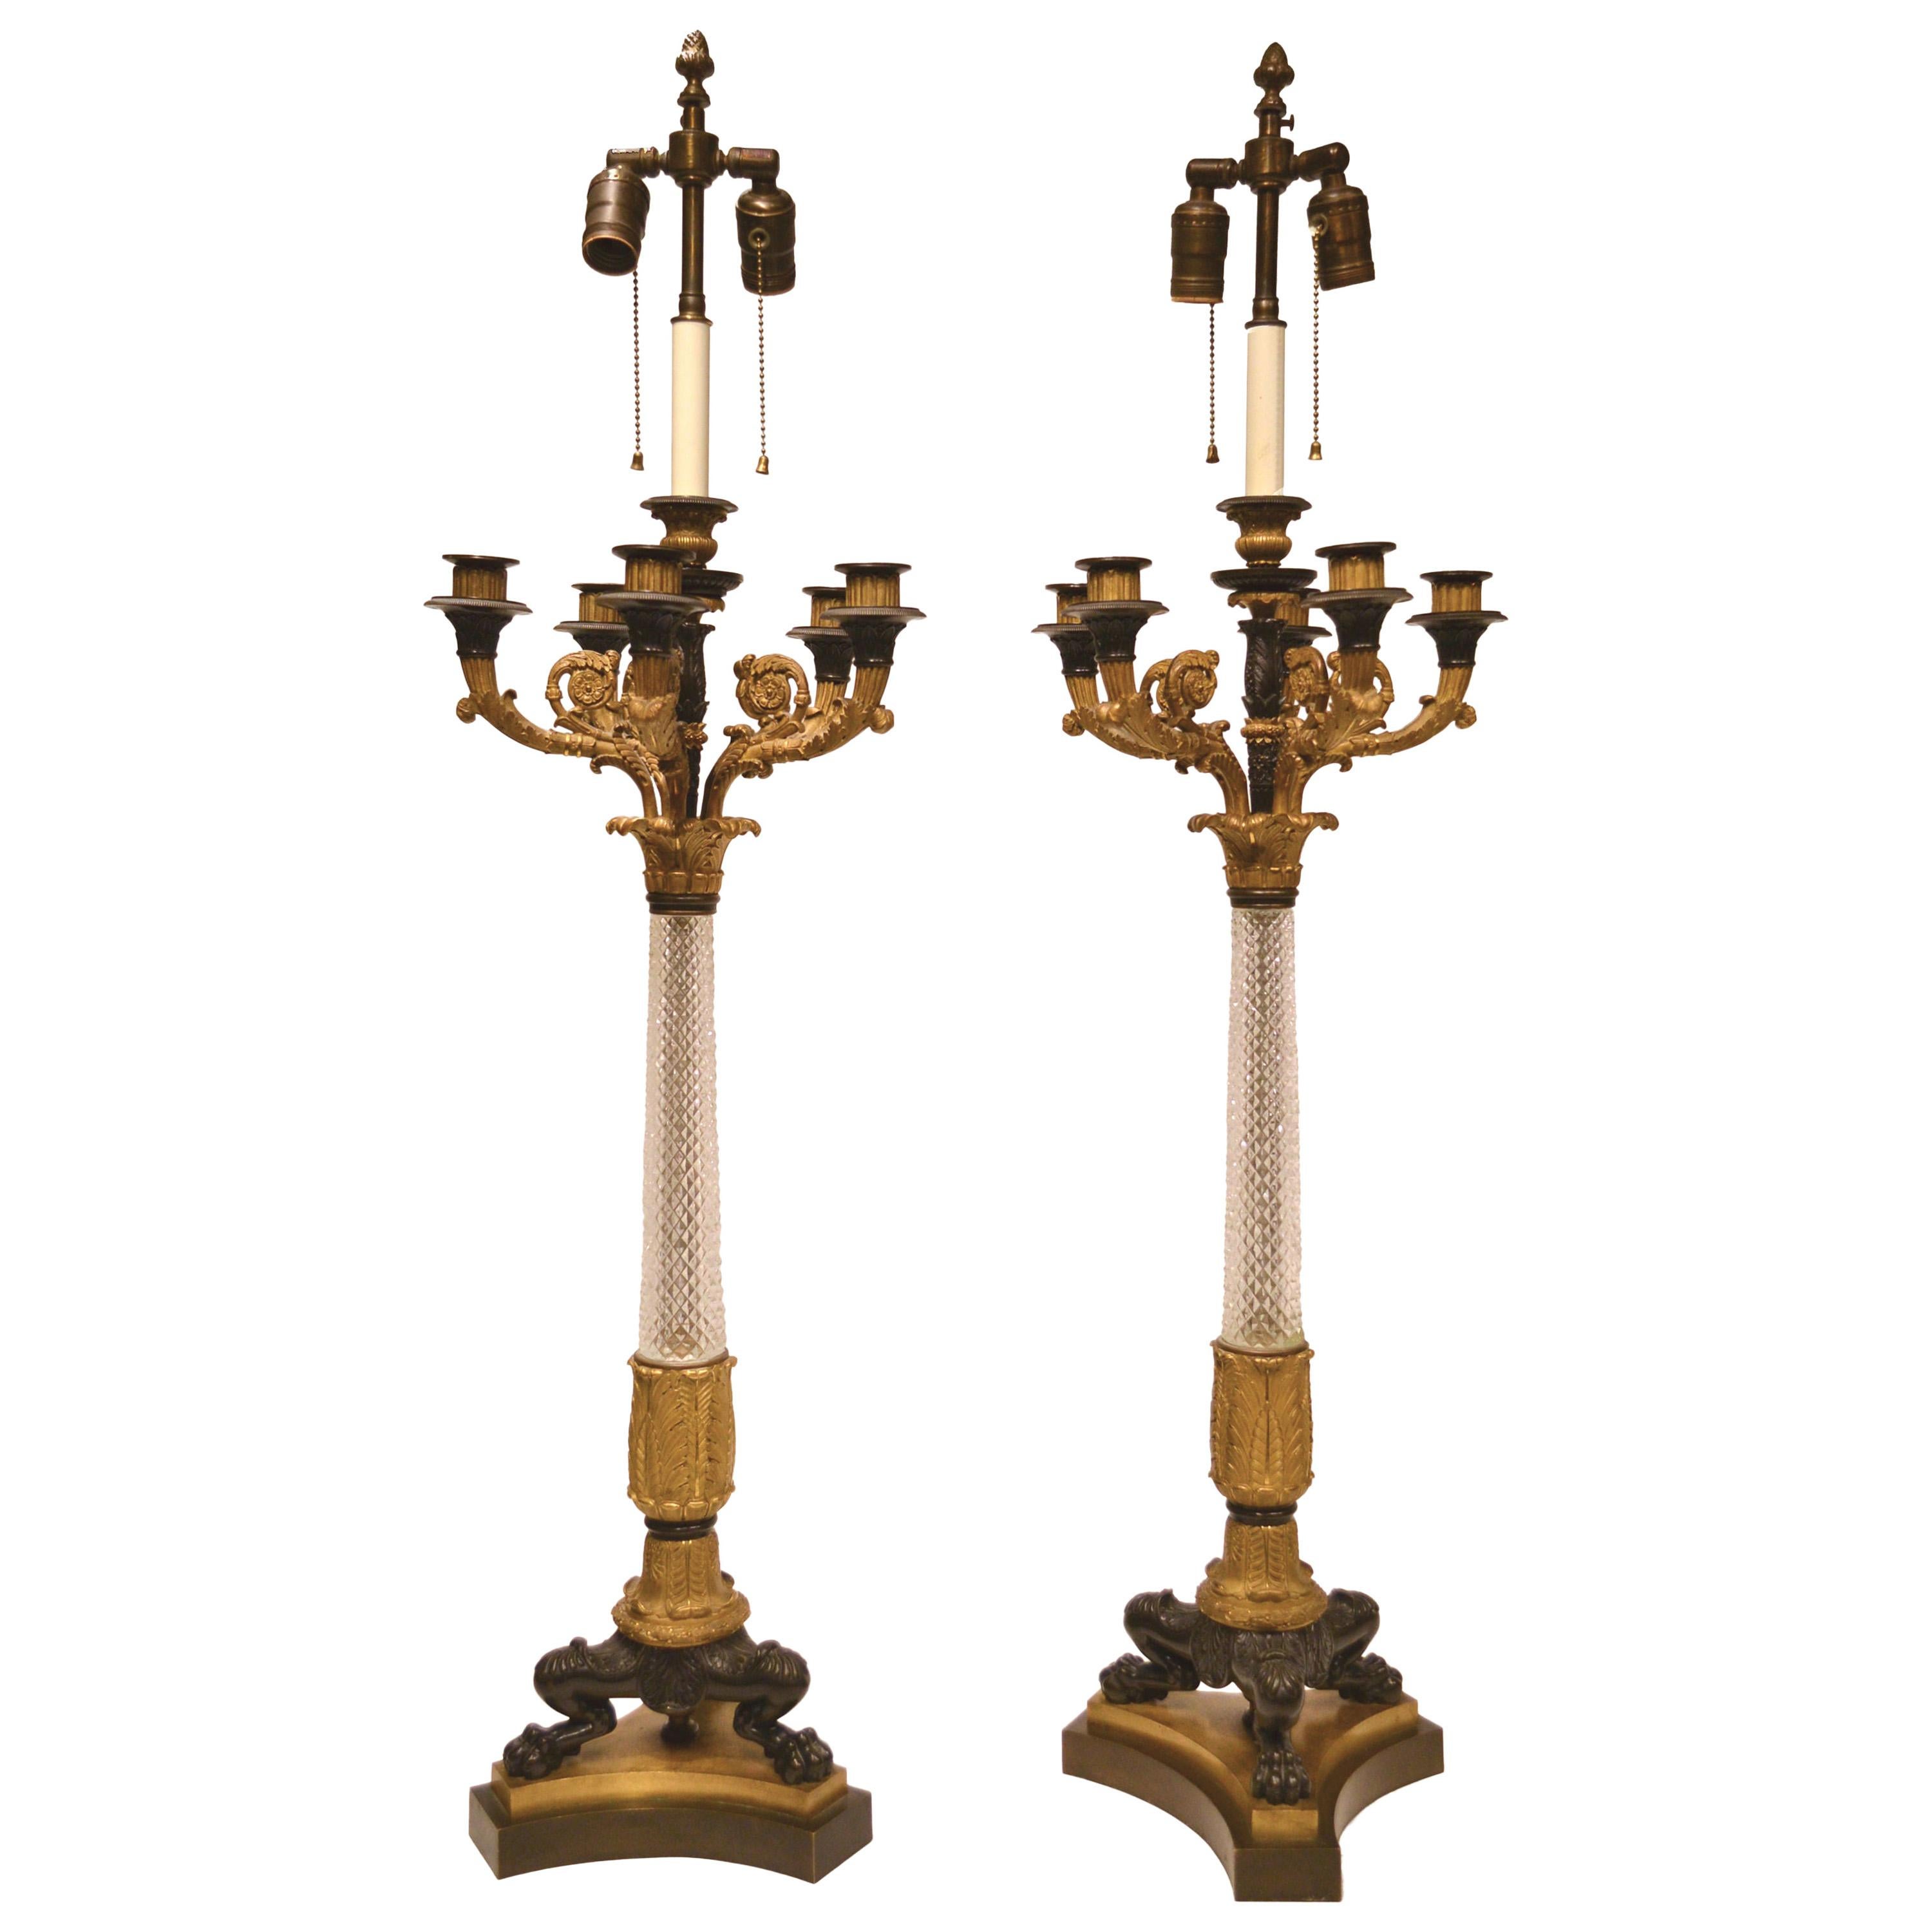 Paire de candélabres en verre taillé et bronze de style Empire du XIXe siècle français